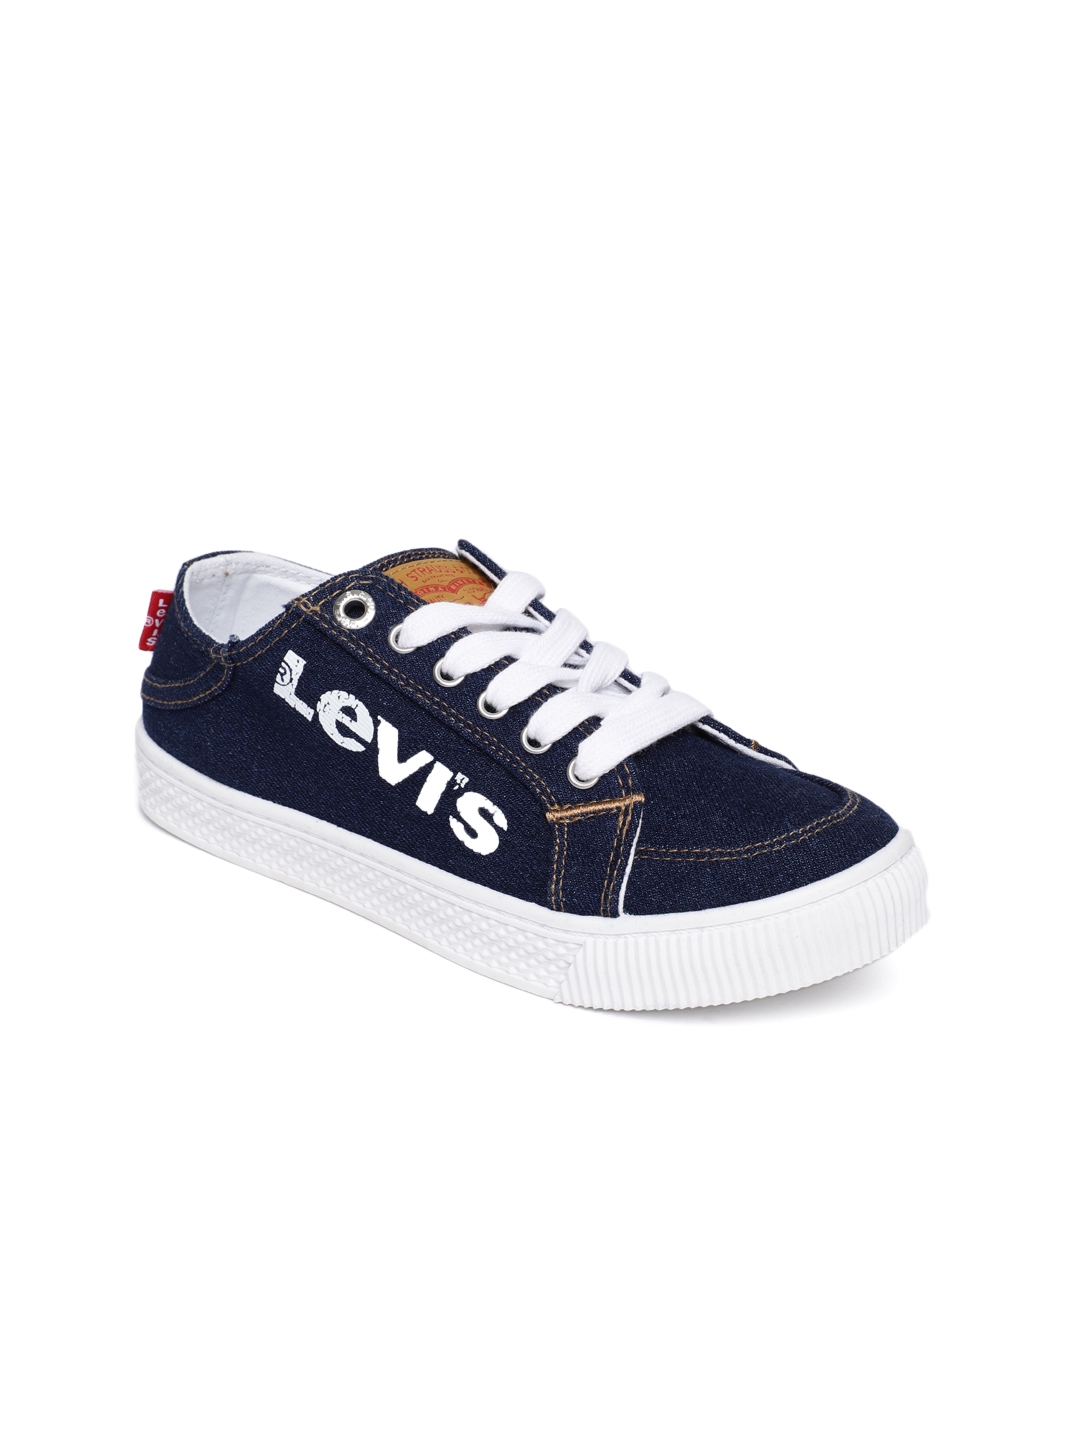 Buy Levis Women Navy Blue Hansen W Sneakers - Casual Shoes for Women  9035971 | Myntra